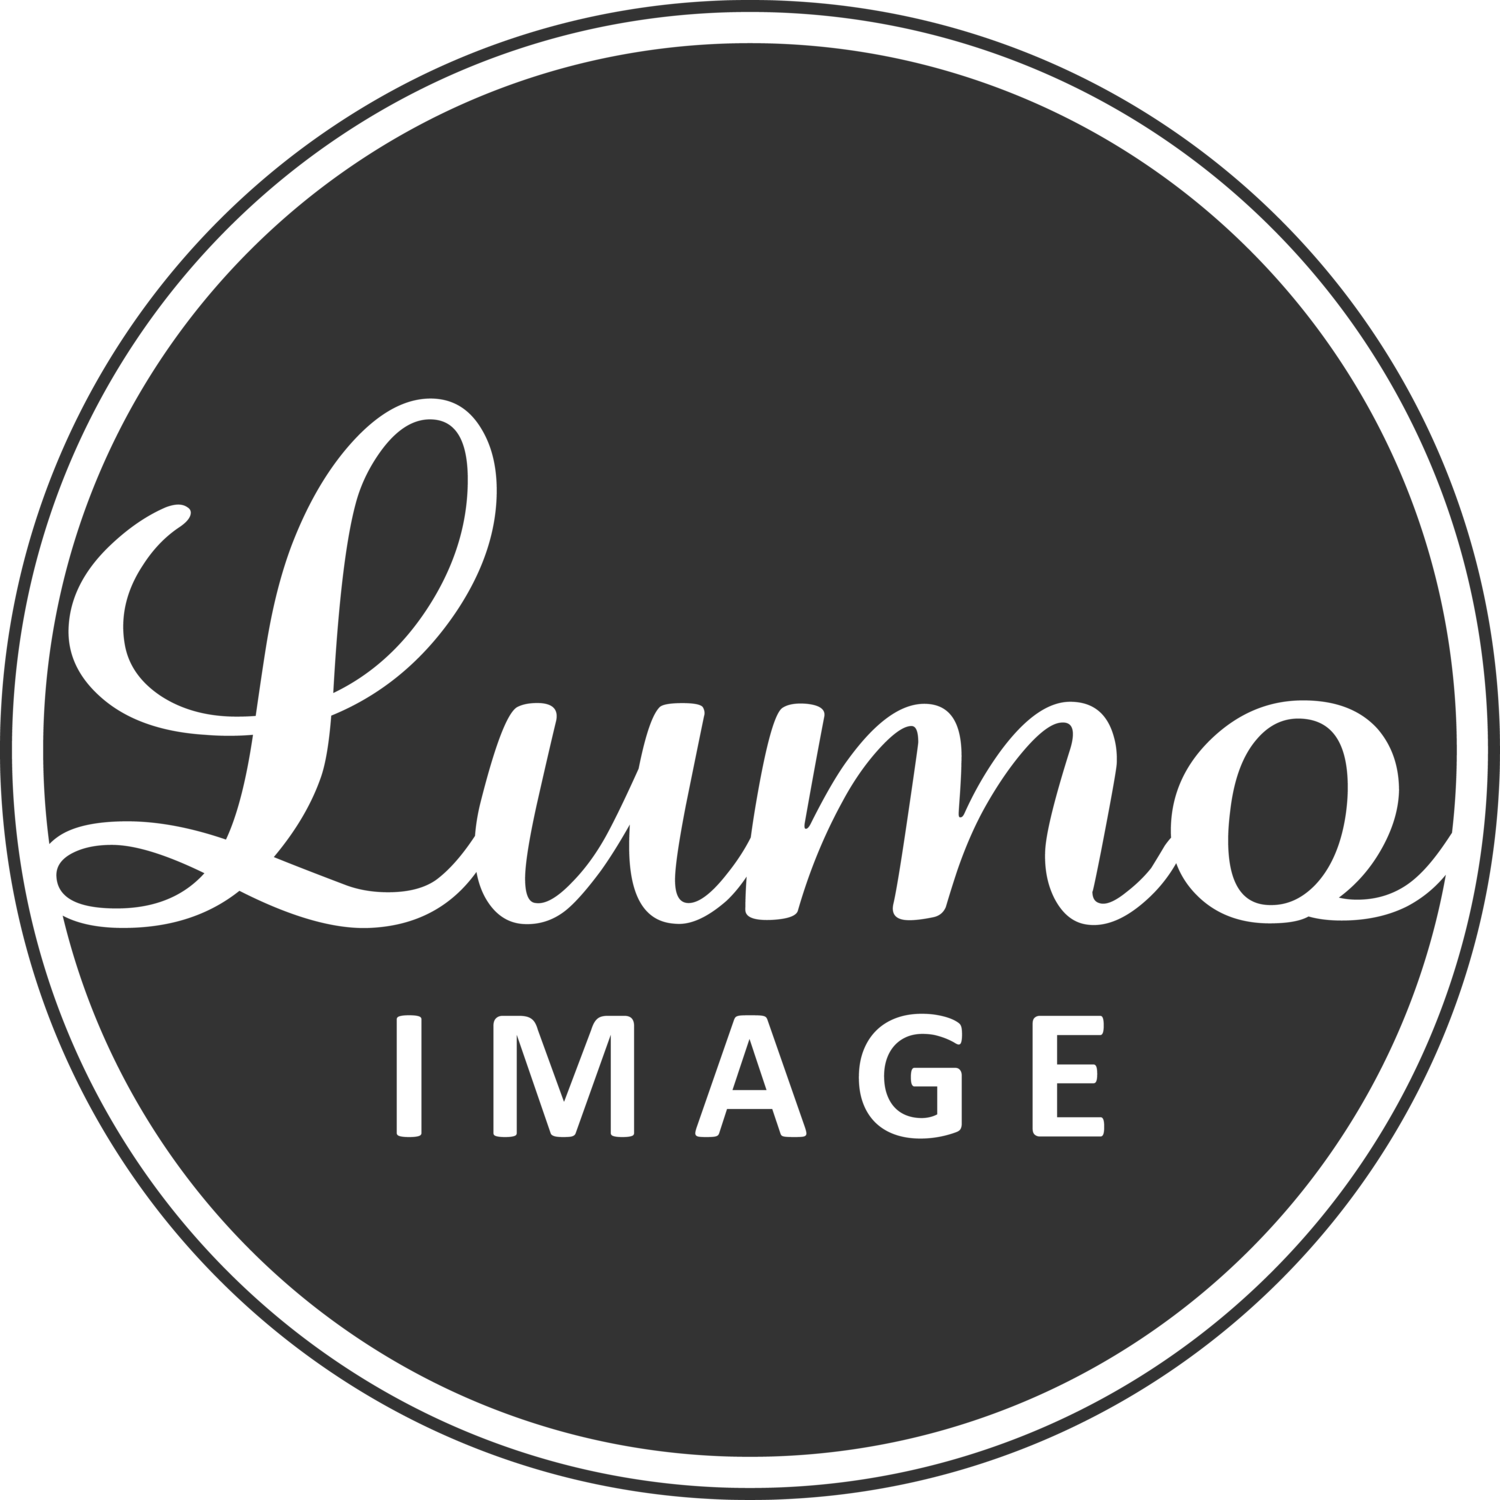 LUMO Image Häävalokuvaaja